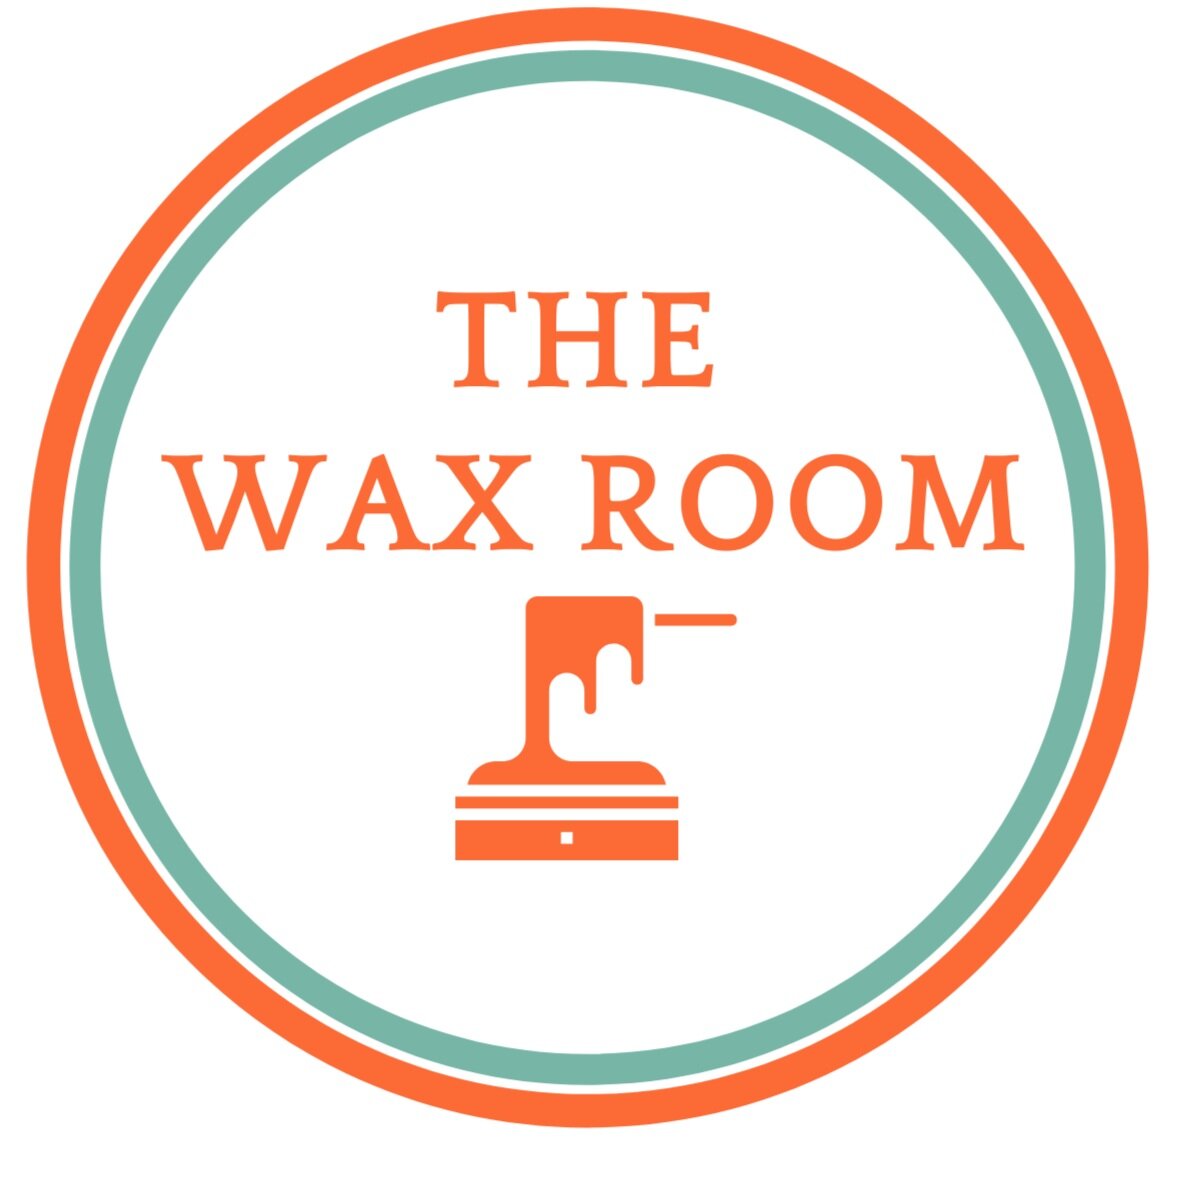 The Wax Room